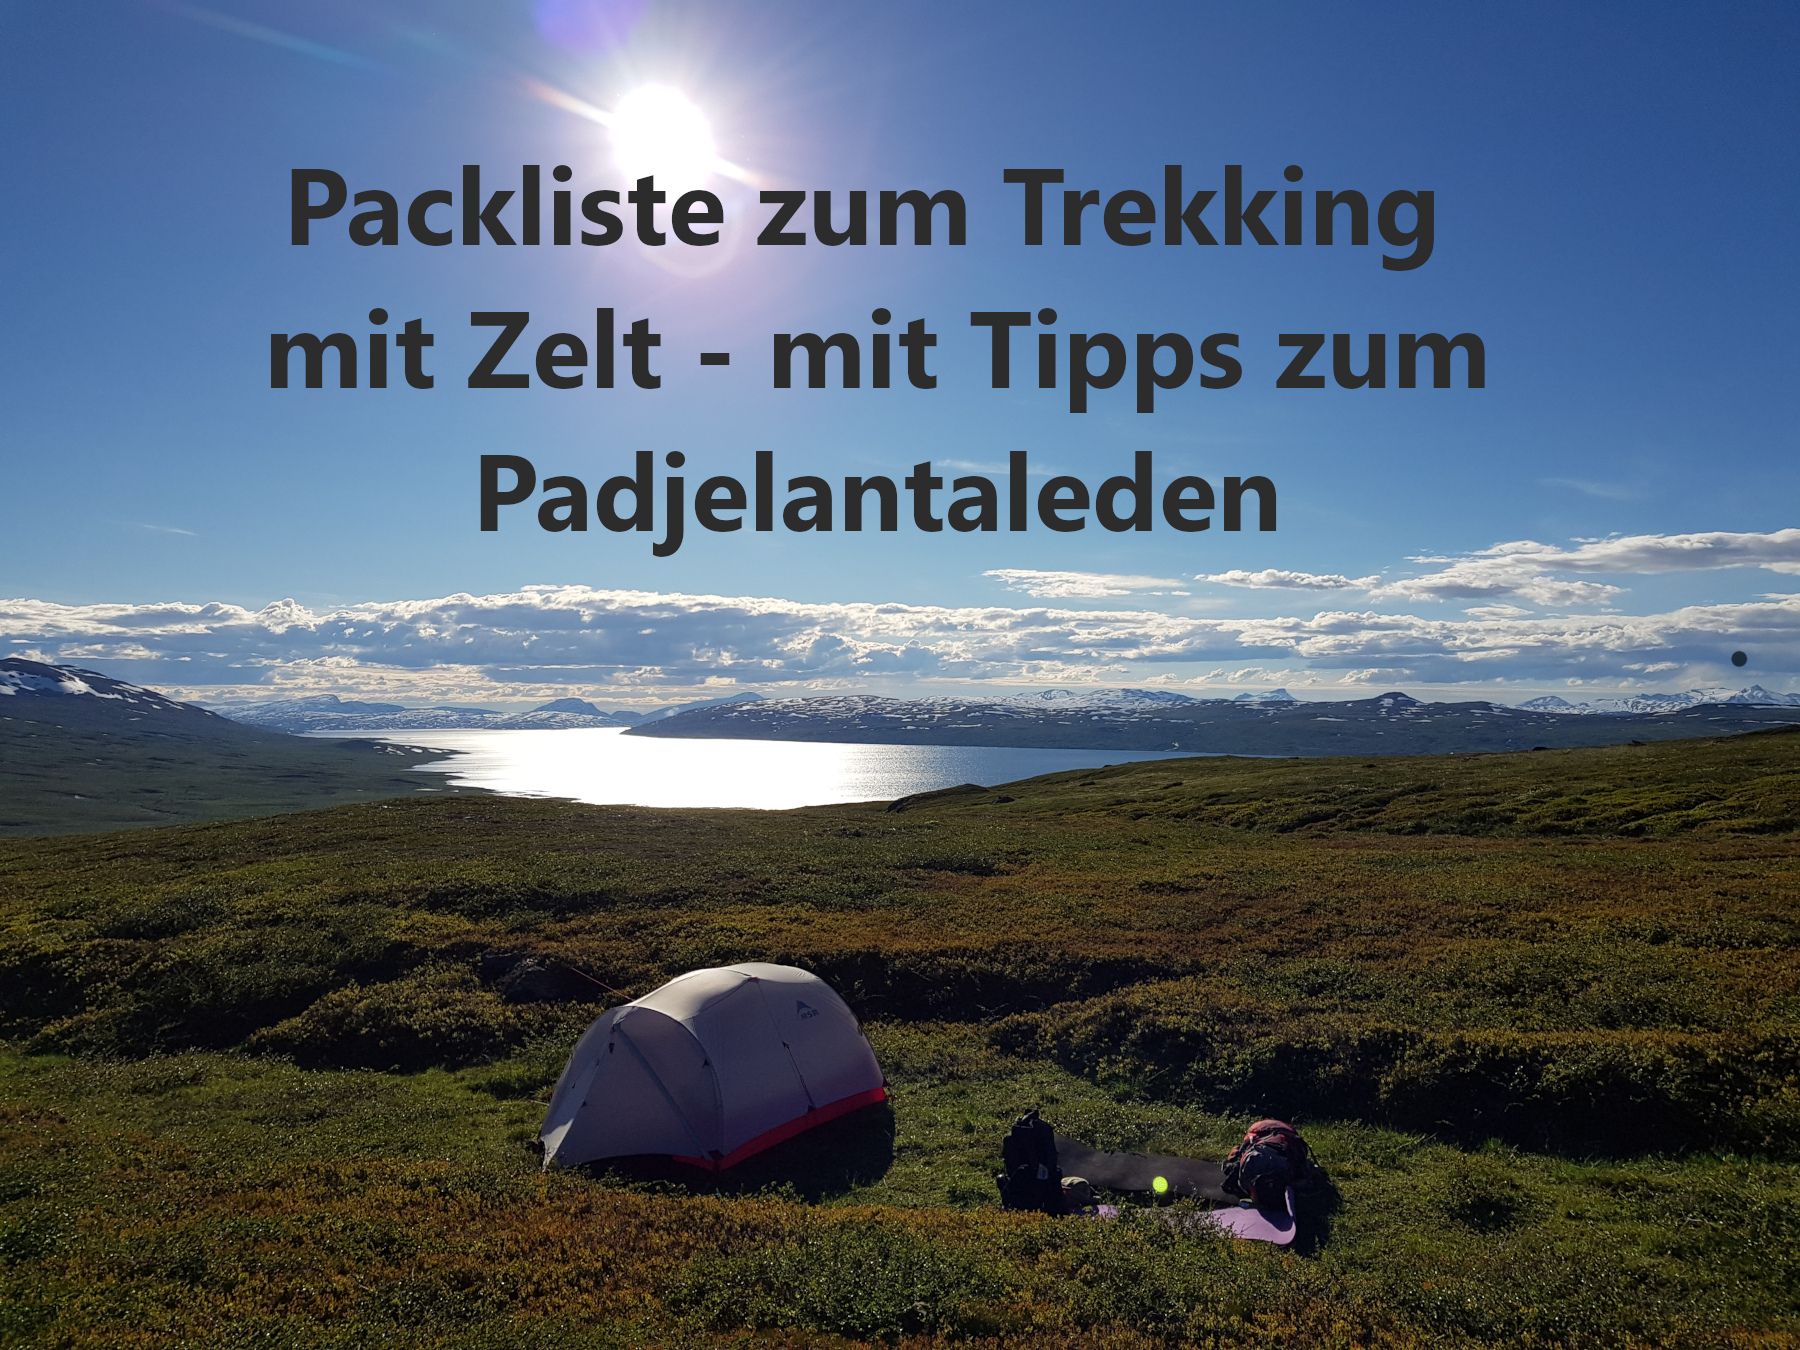 Packliste zum Trekking mit Zelt - mit Tipps zum Padjelantaleden